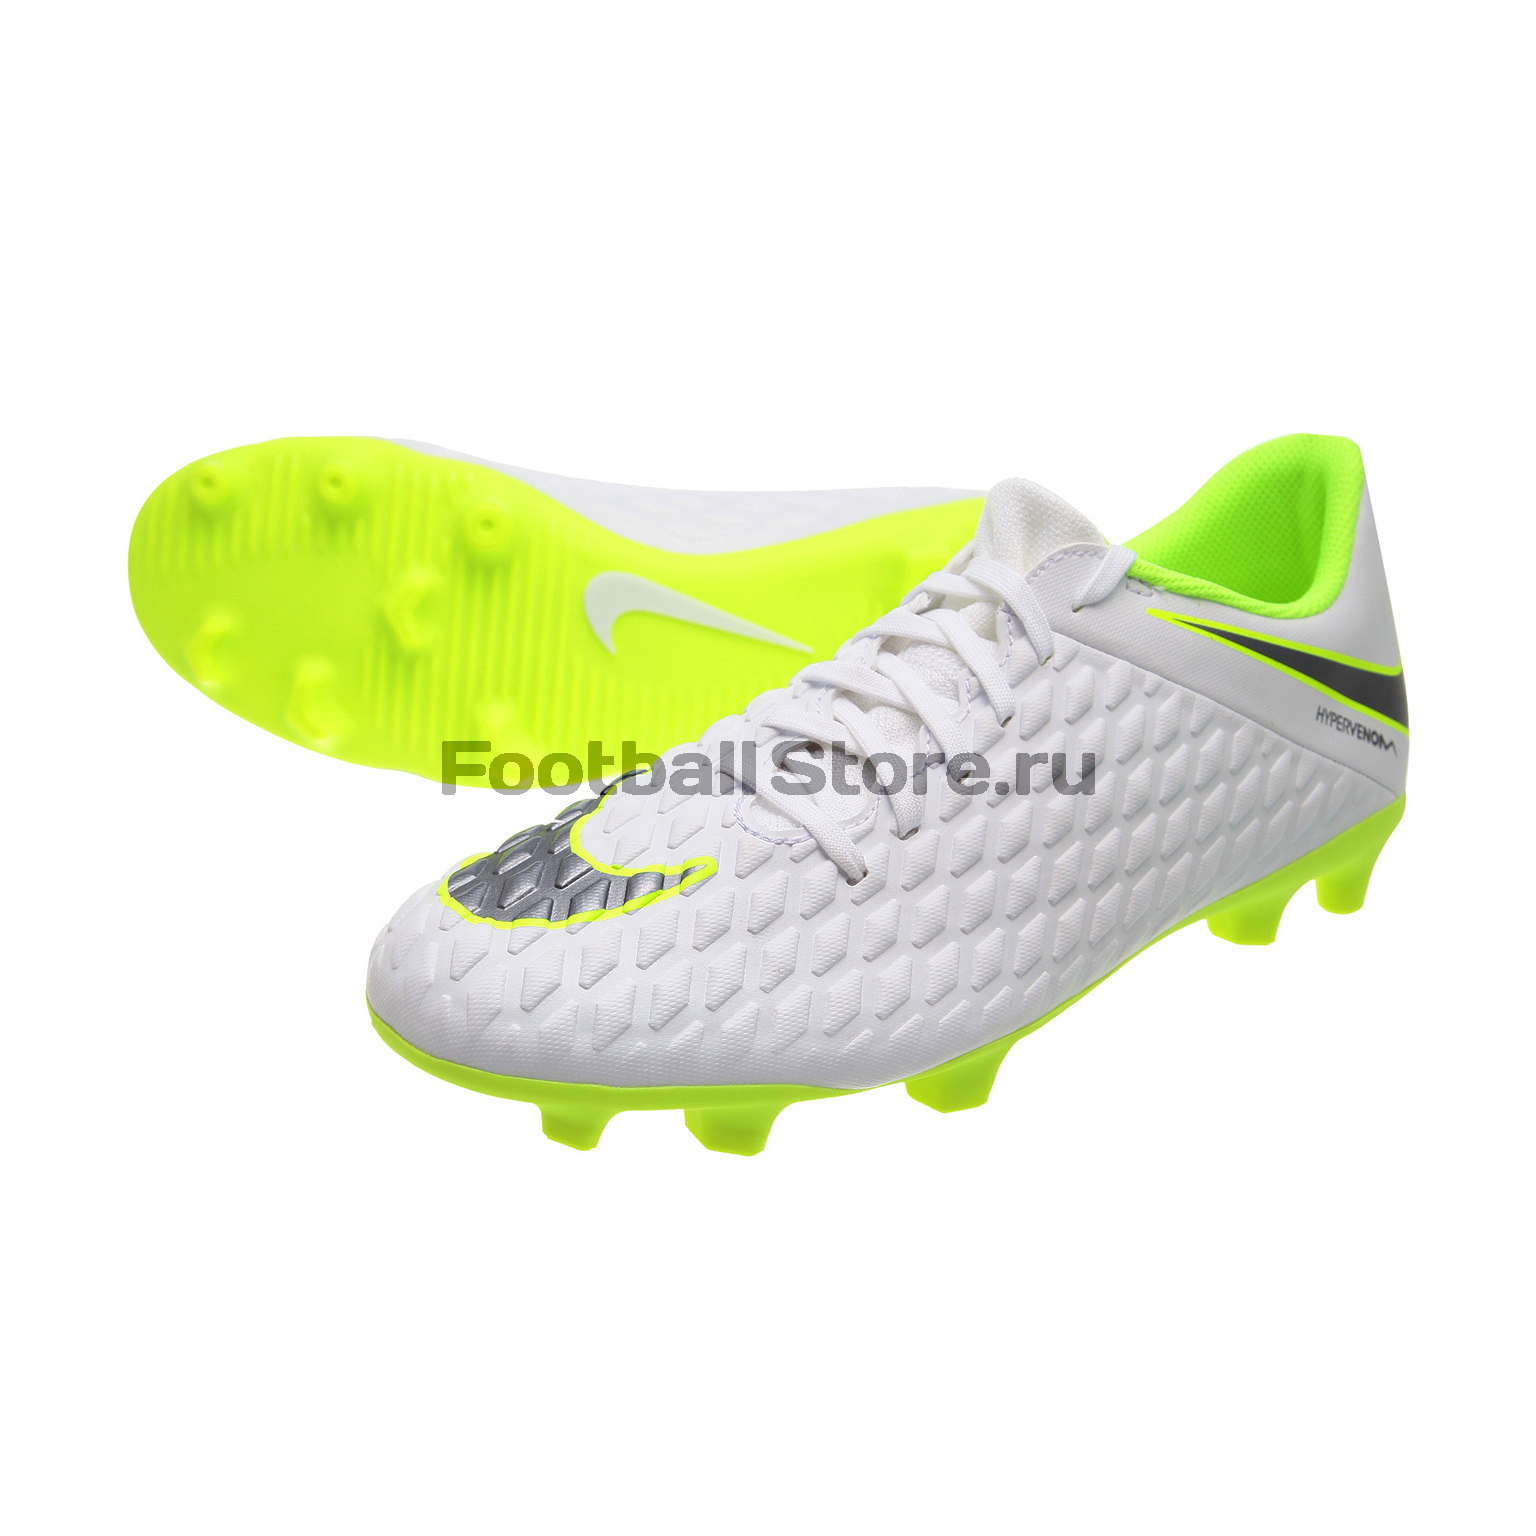 Бутсы Nike 3 Club FG AJ4145-107 купить бутсы в интернет магазине Footballstore, цена, фото, отзывы